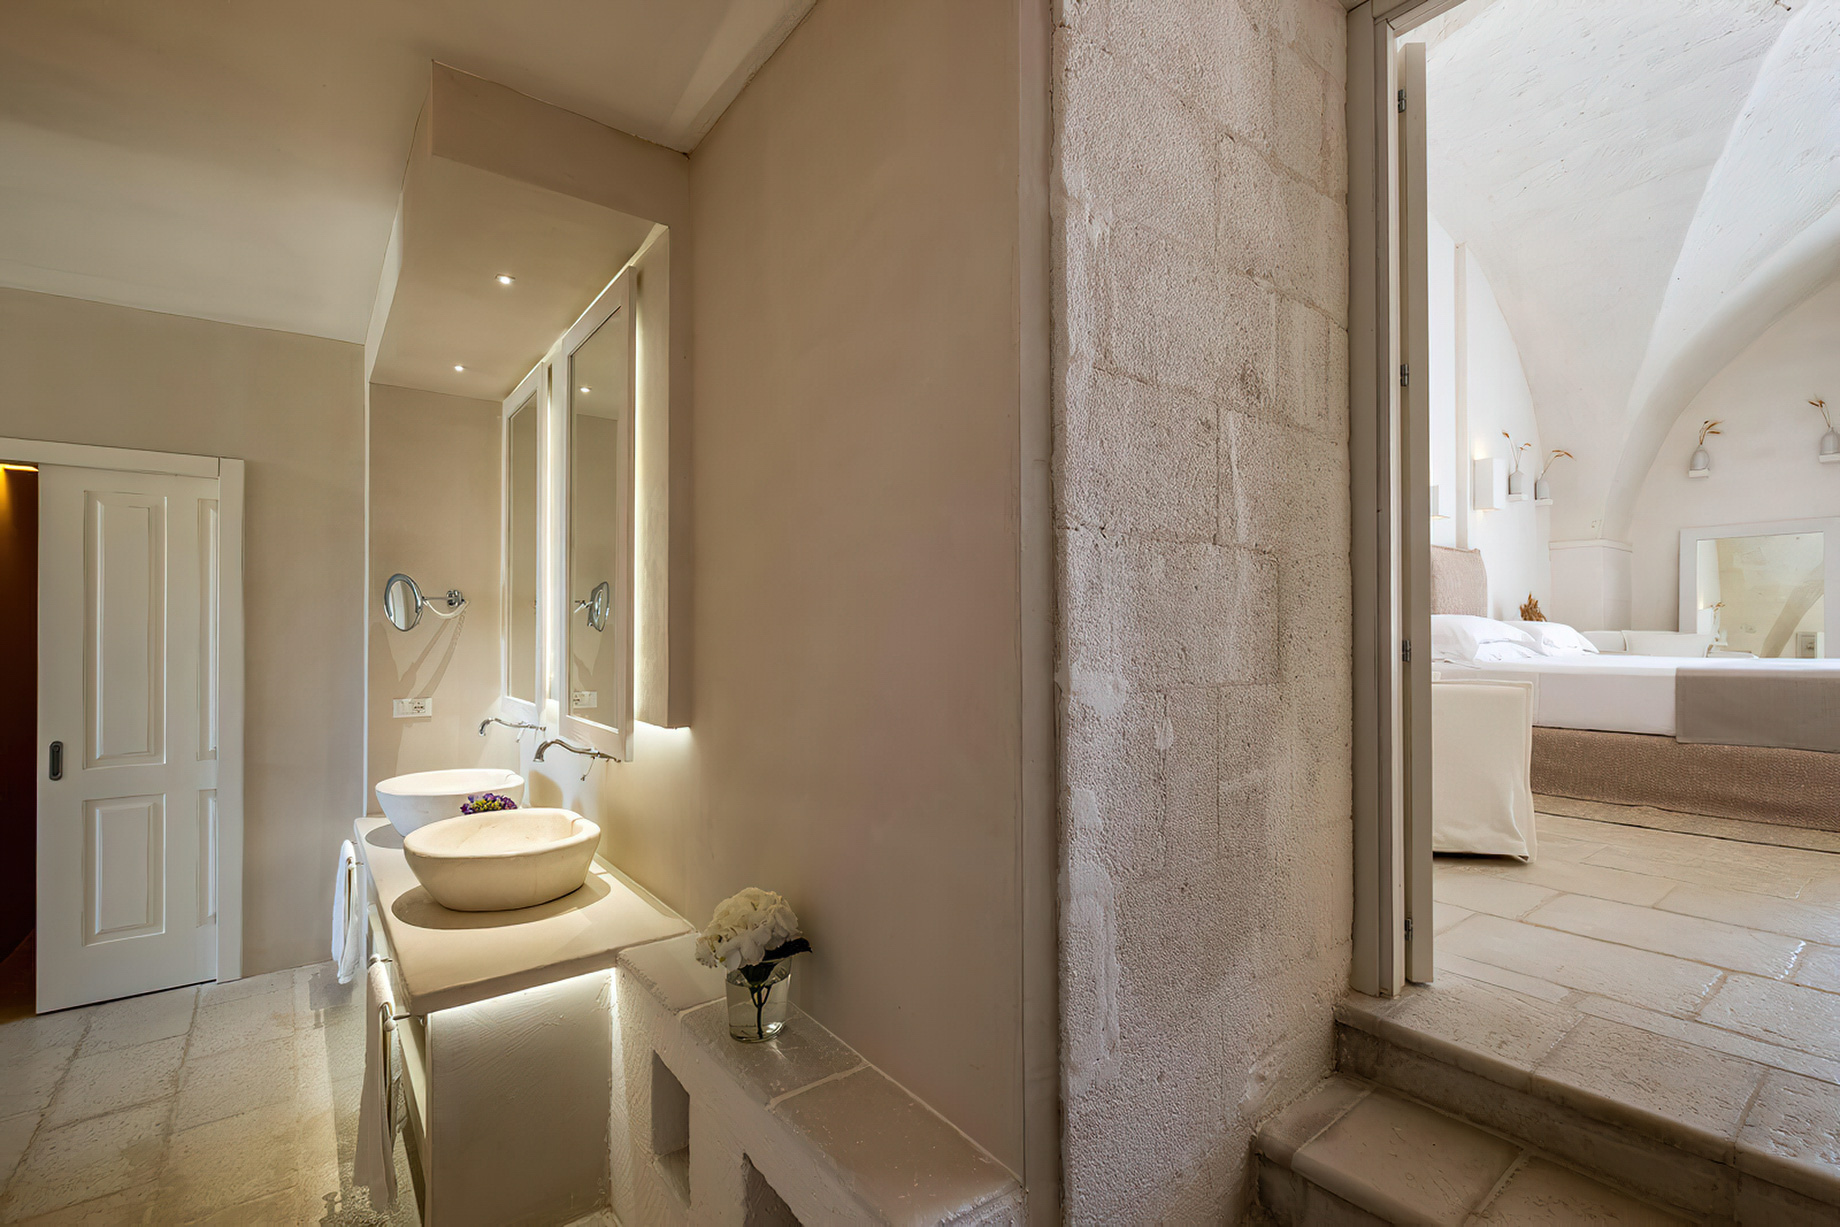 Baglioni Masseria Muzza Hotel – Puglia, Italy – Deluxe Suite Bathroom Vanity